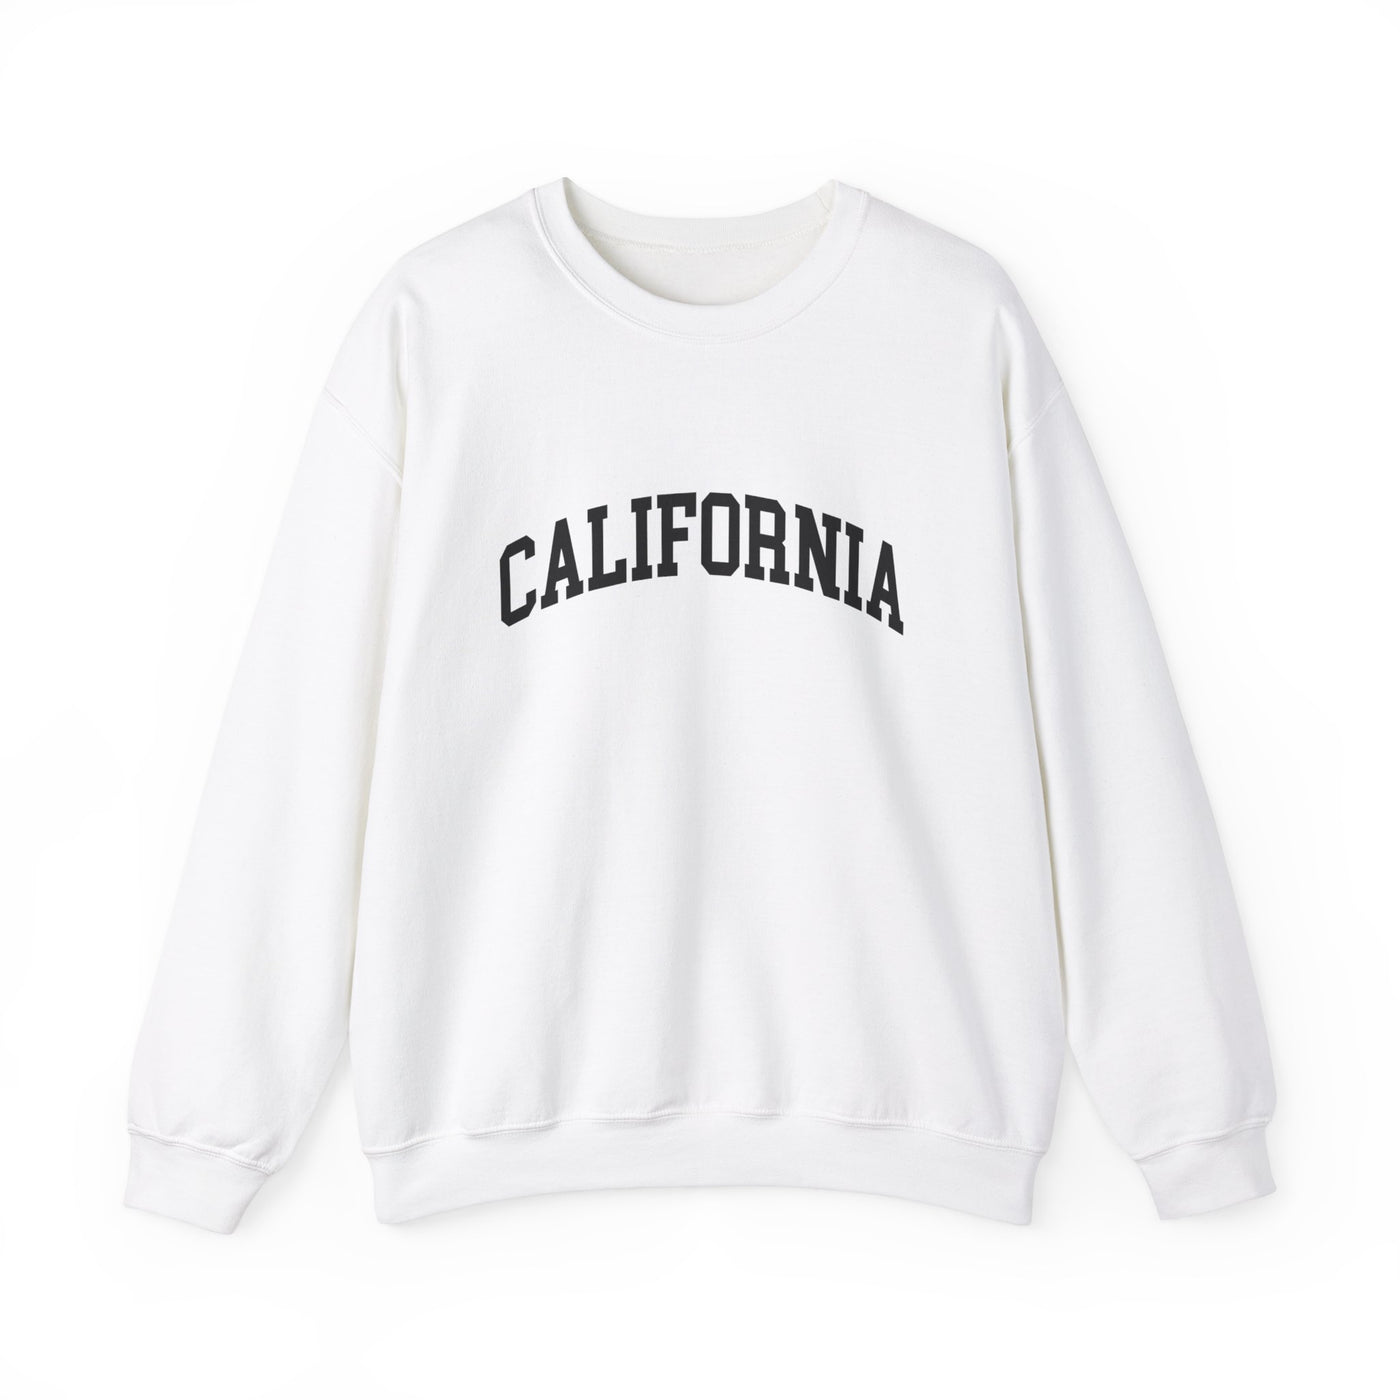 California Collegiate Crewneck Sweatshirt